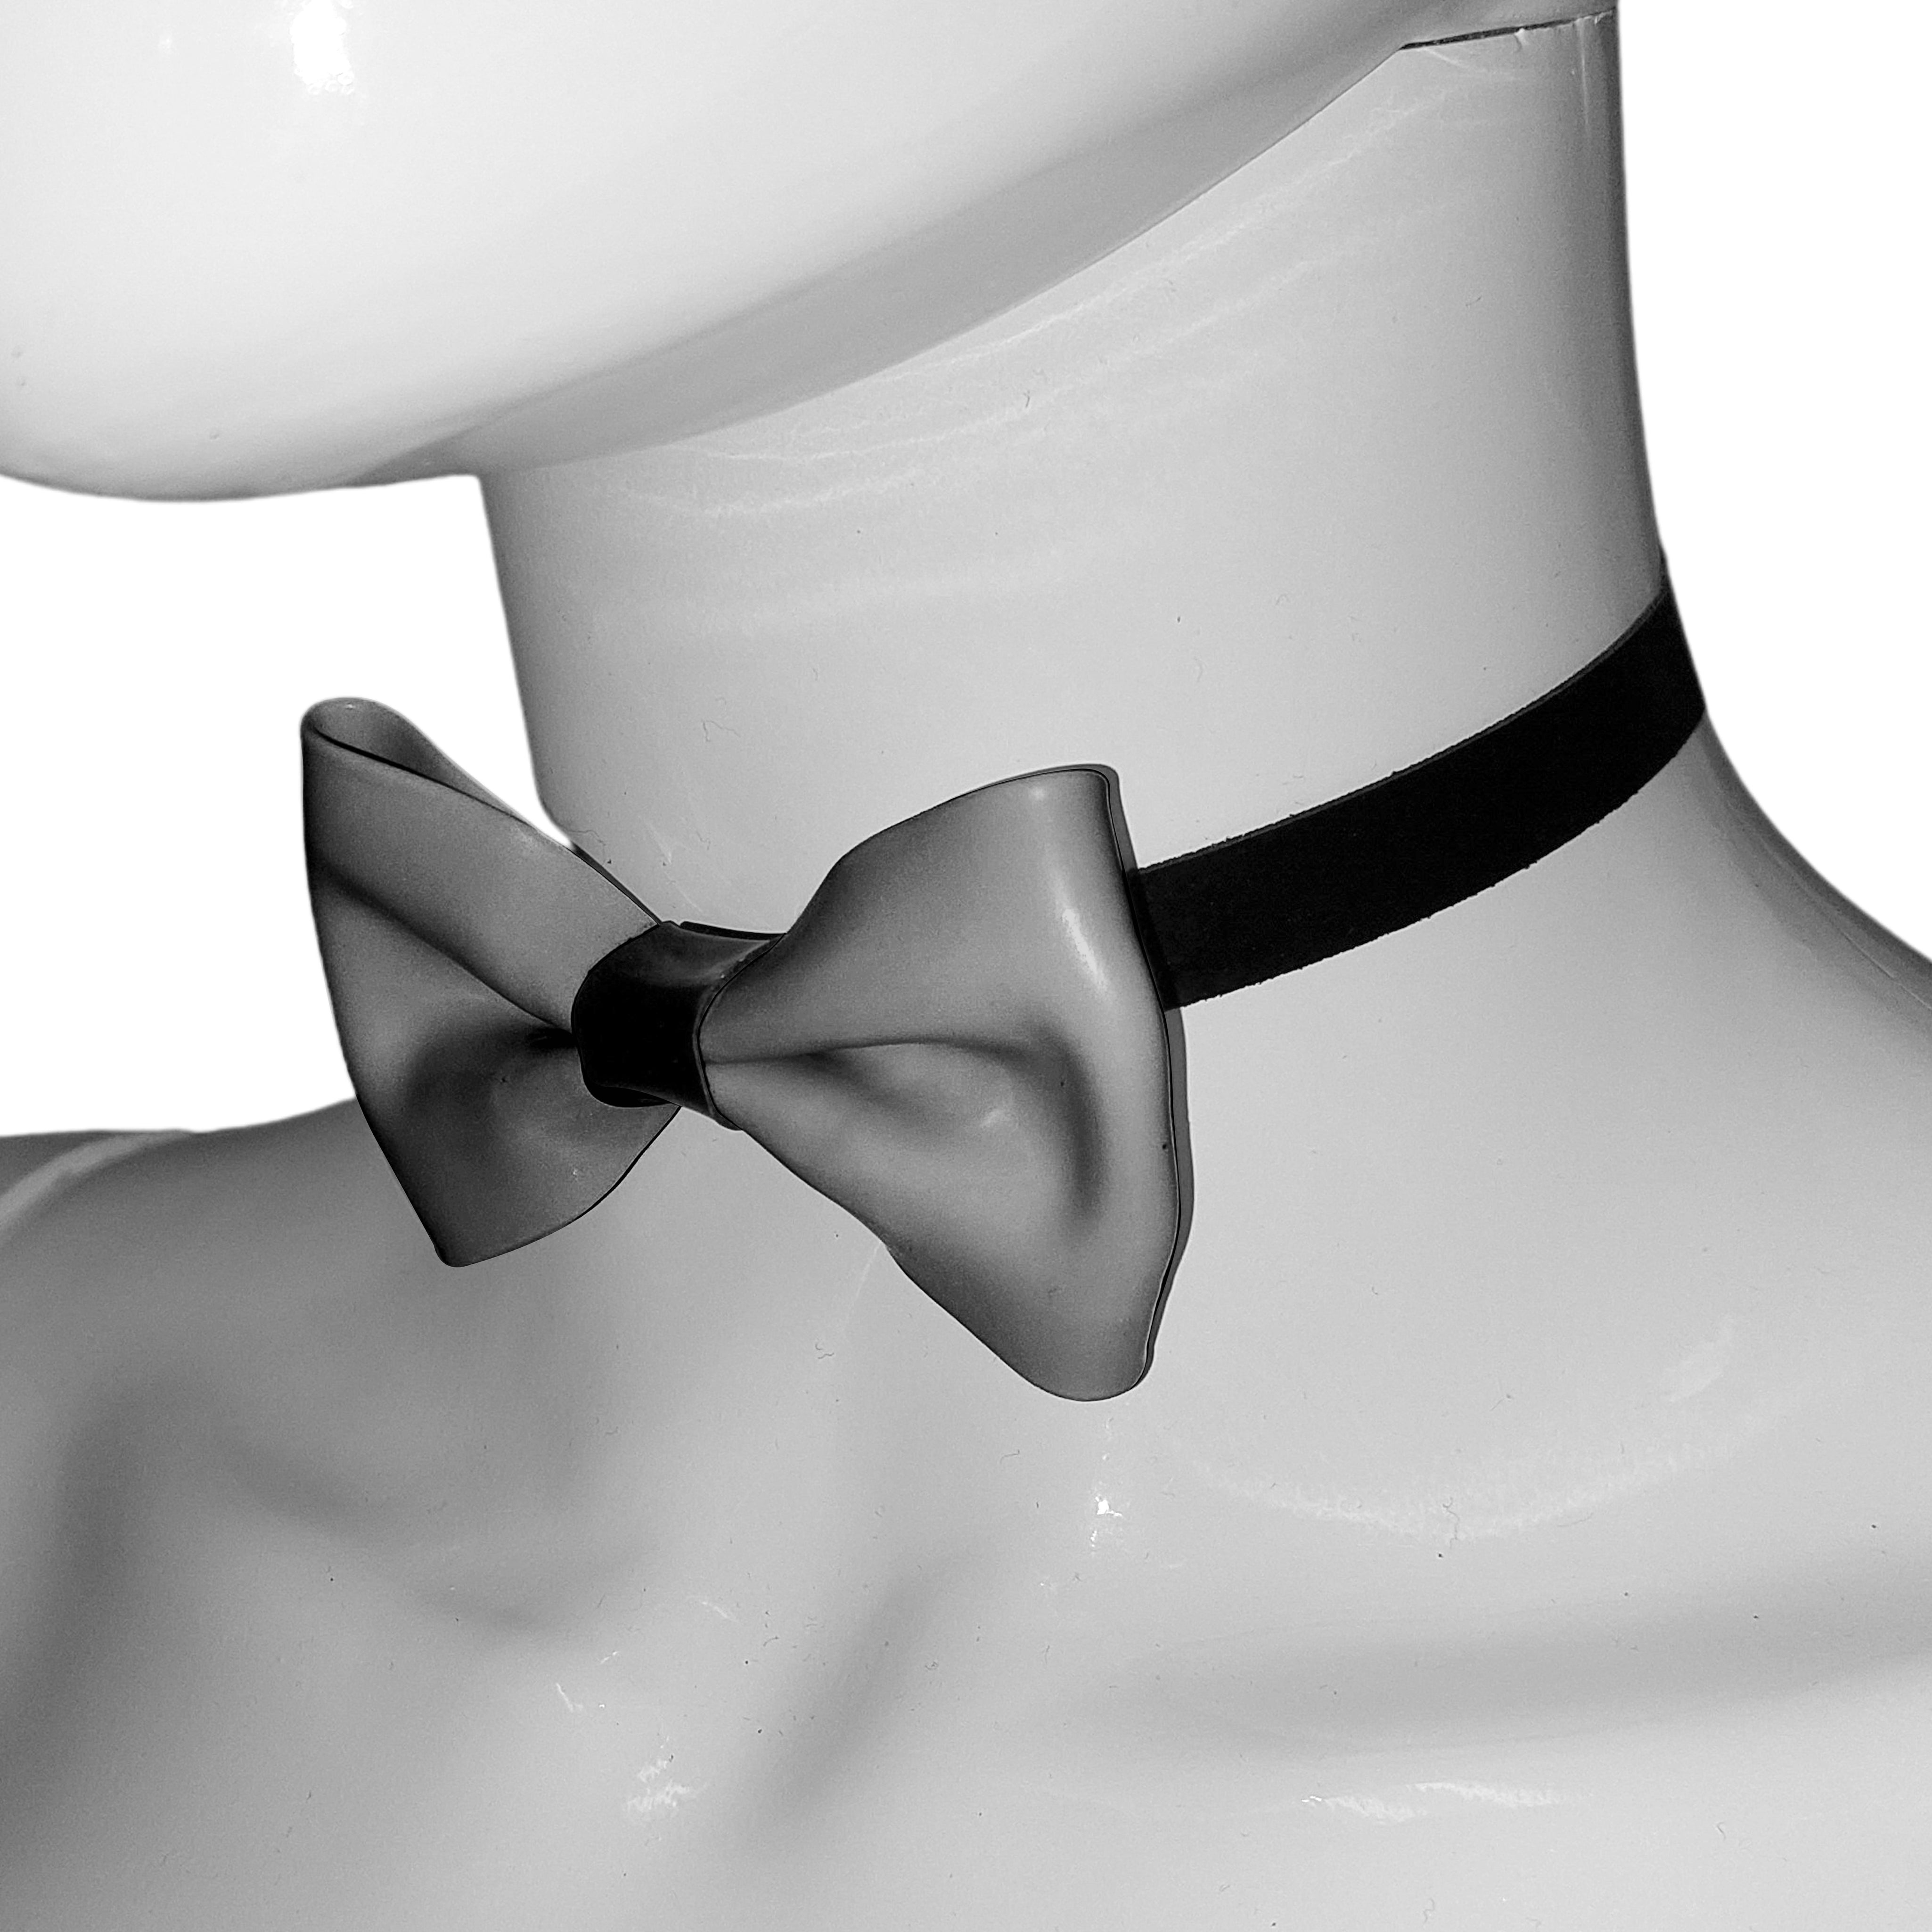 Latex Bow Tie O/S